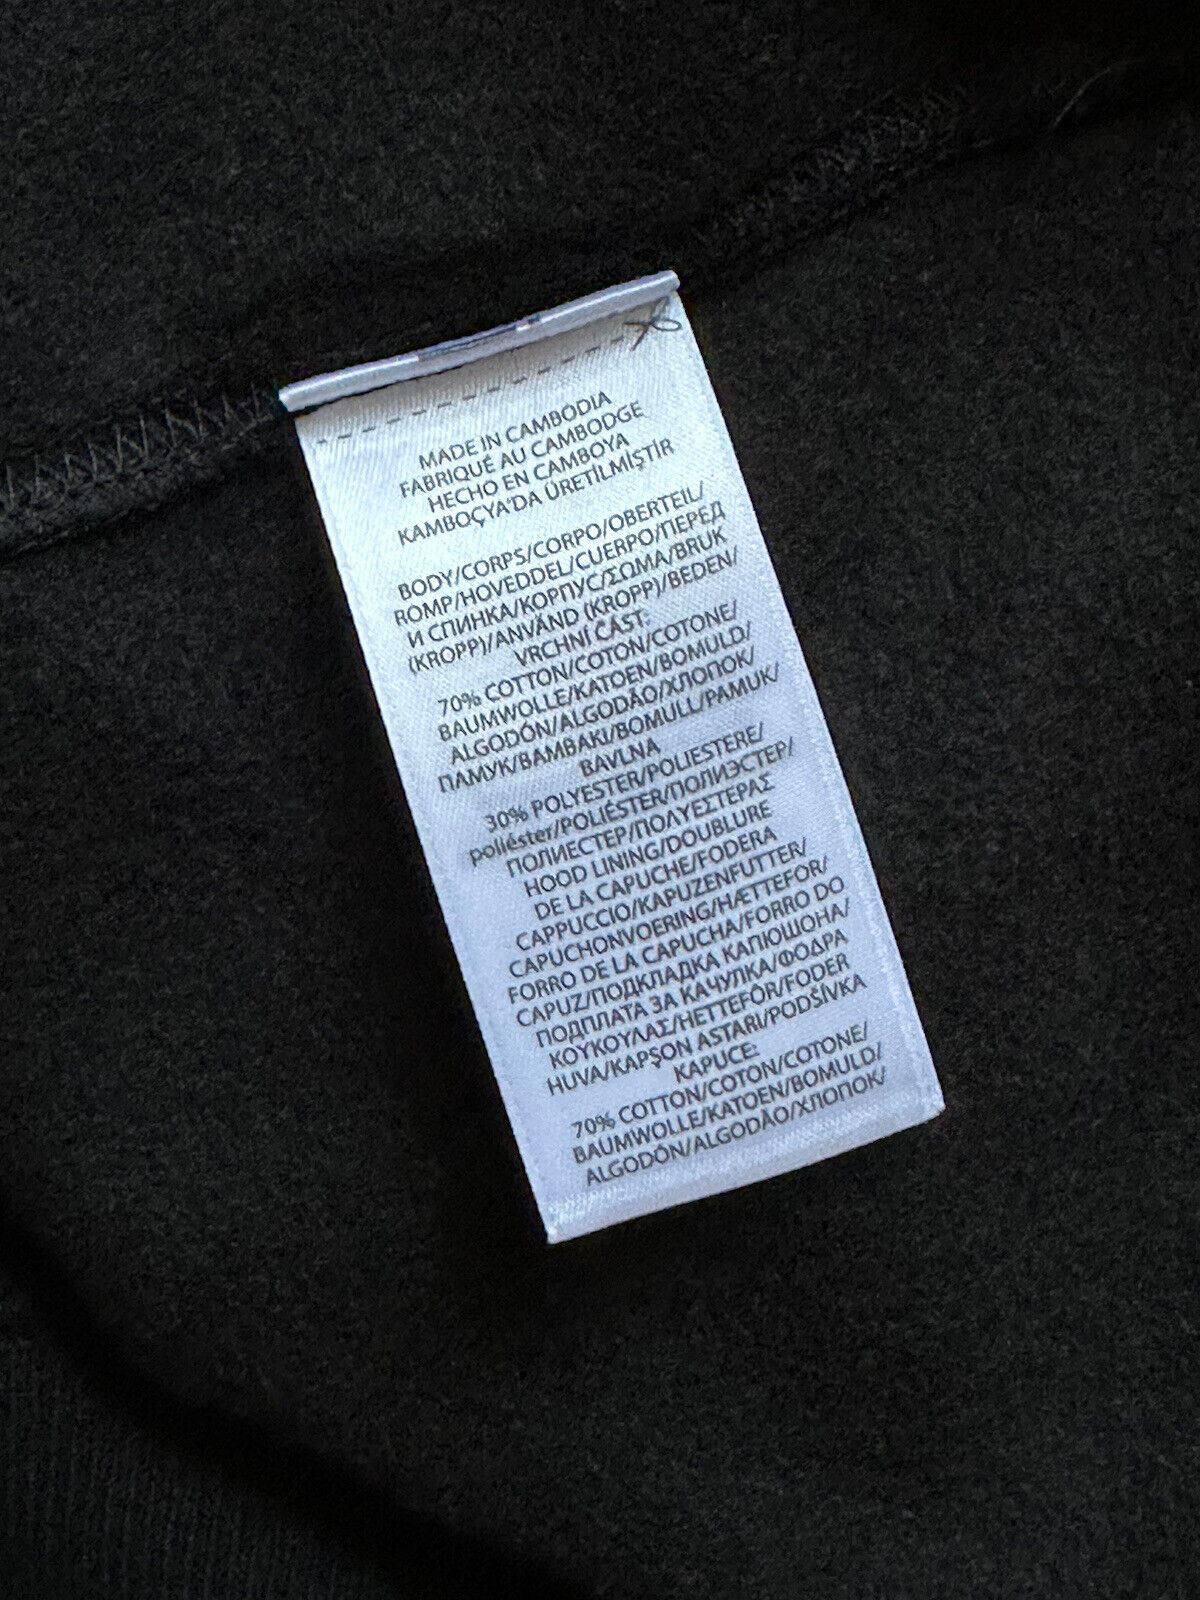 Флисовая толстовка с капюшоном Polo Ralph Lauren Bear, черный размер 2XL, NWT $188 